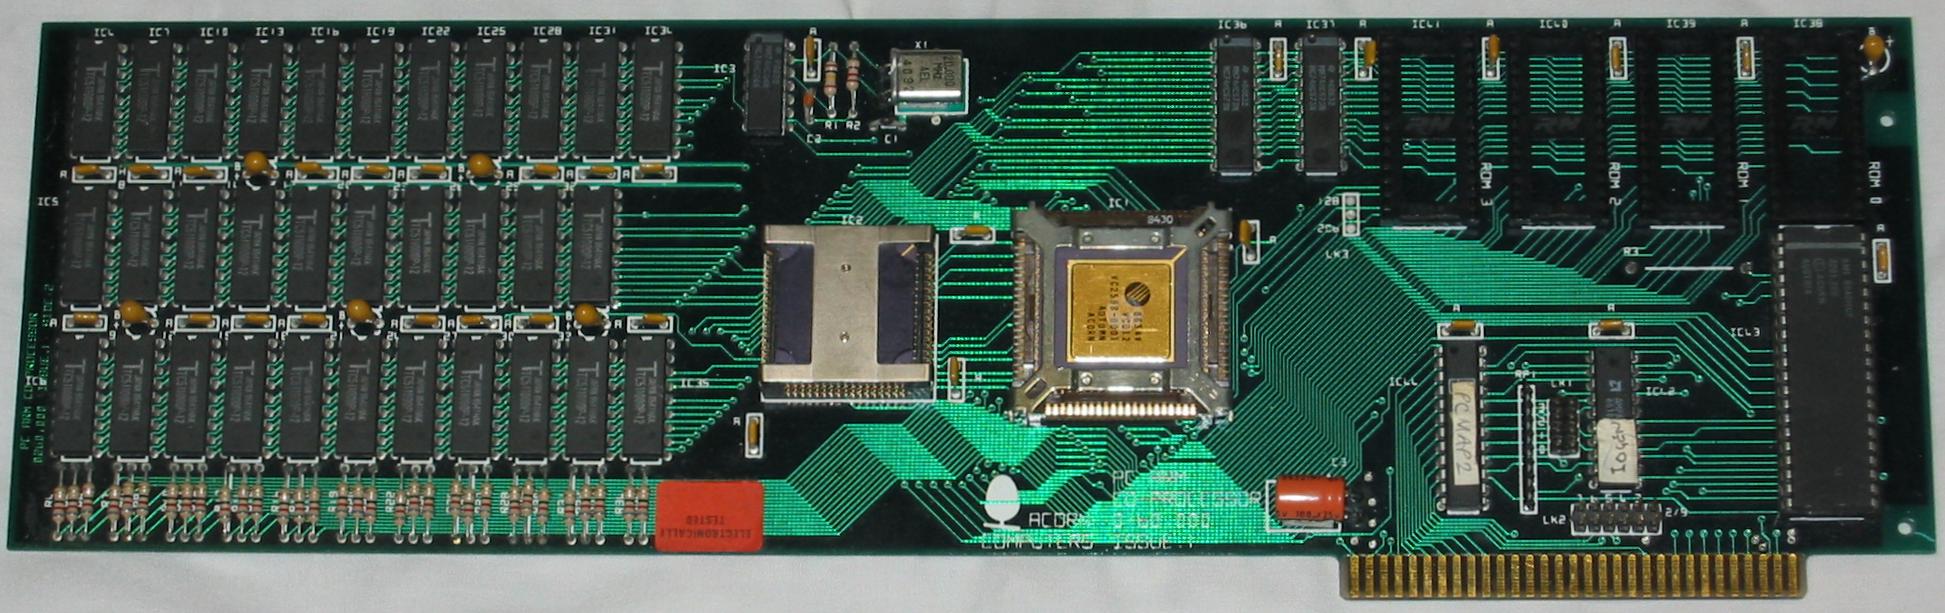 Acorn PC ARM Co-Processor (HiRes)